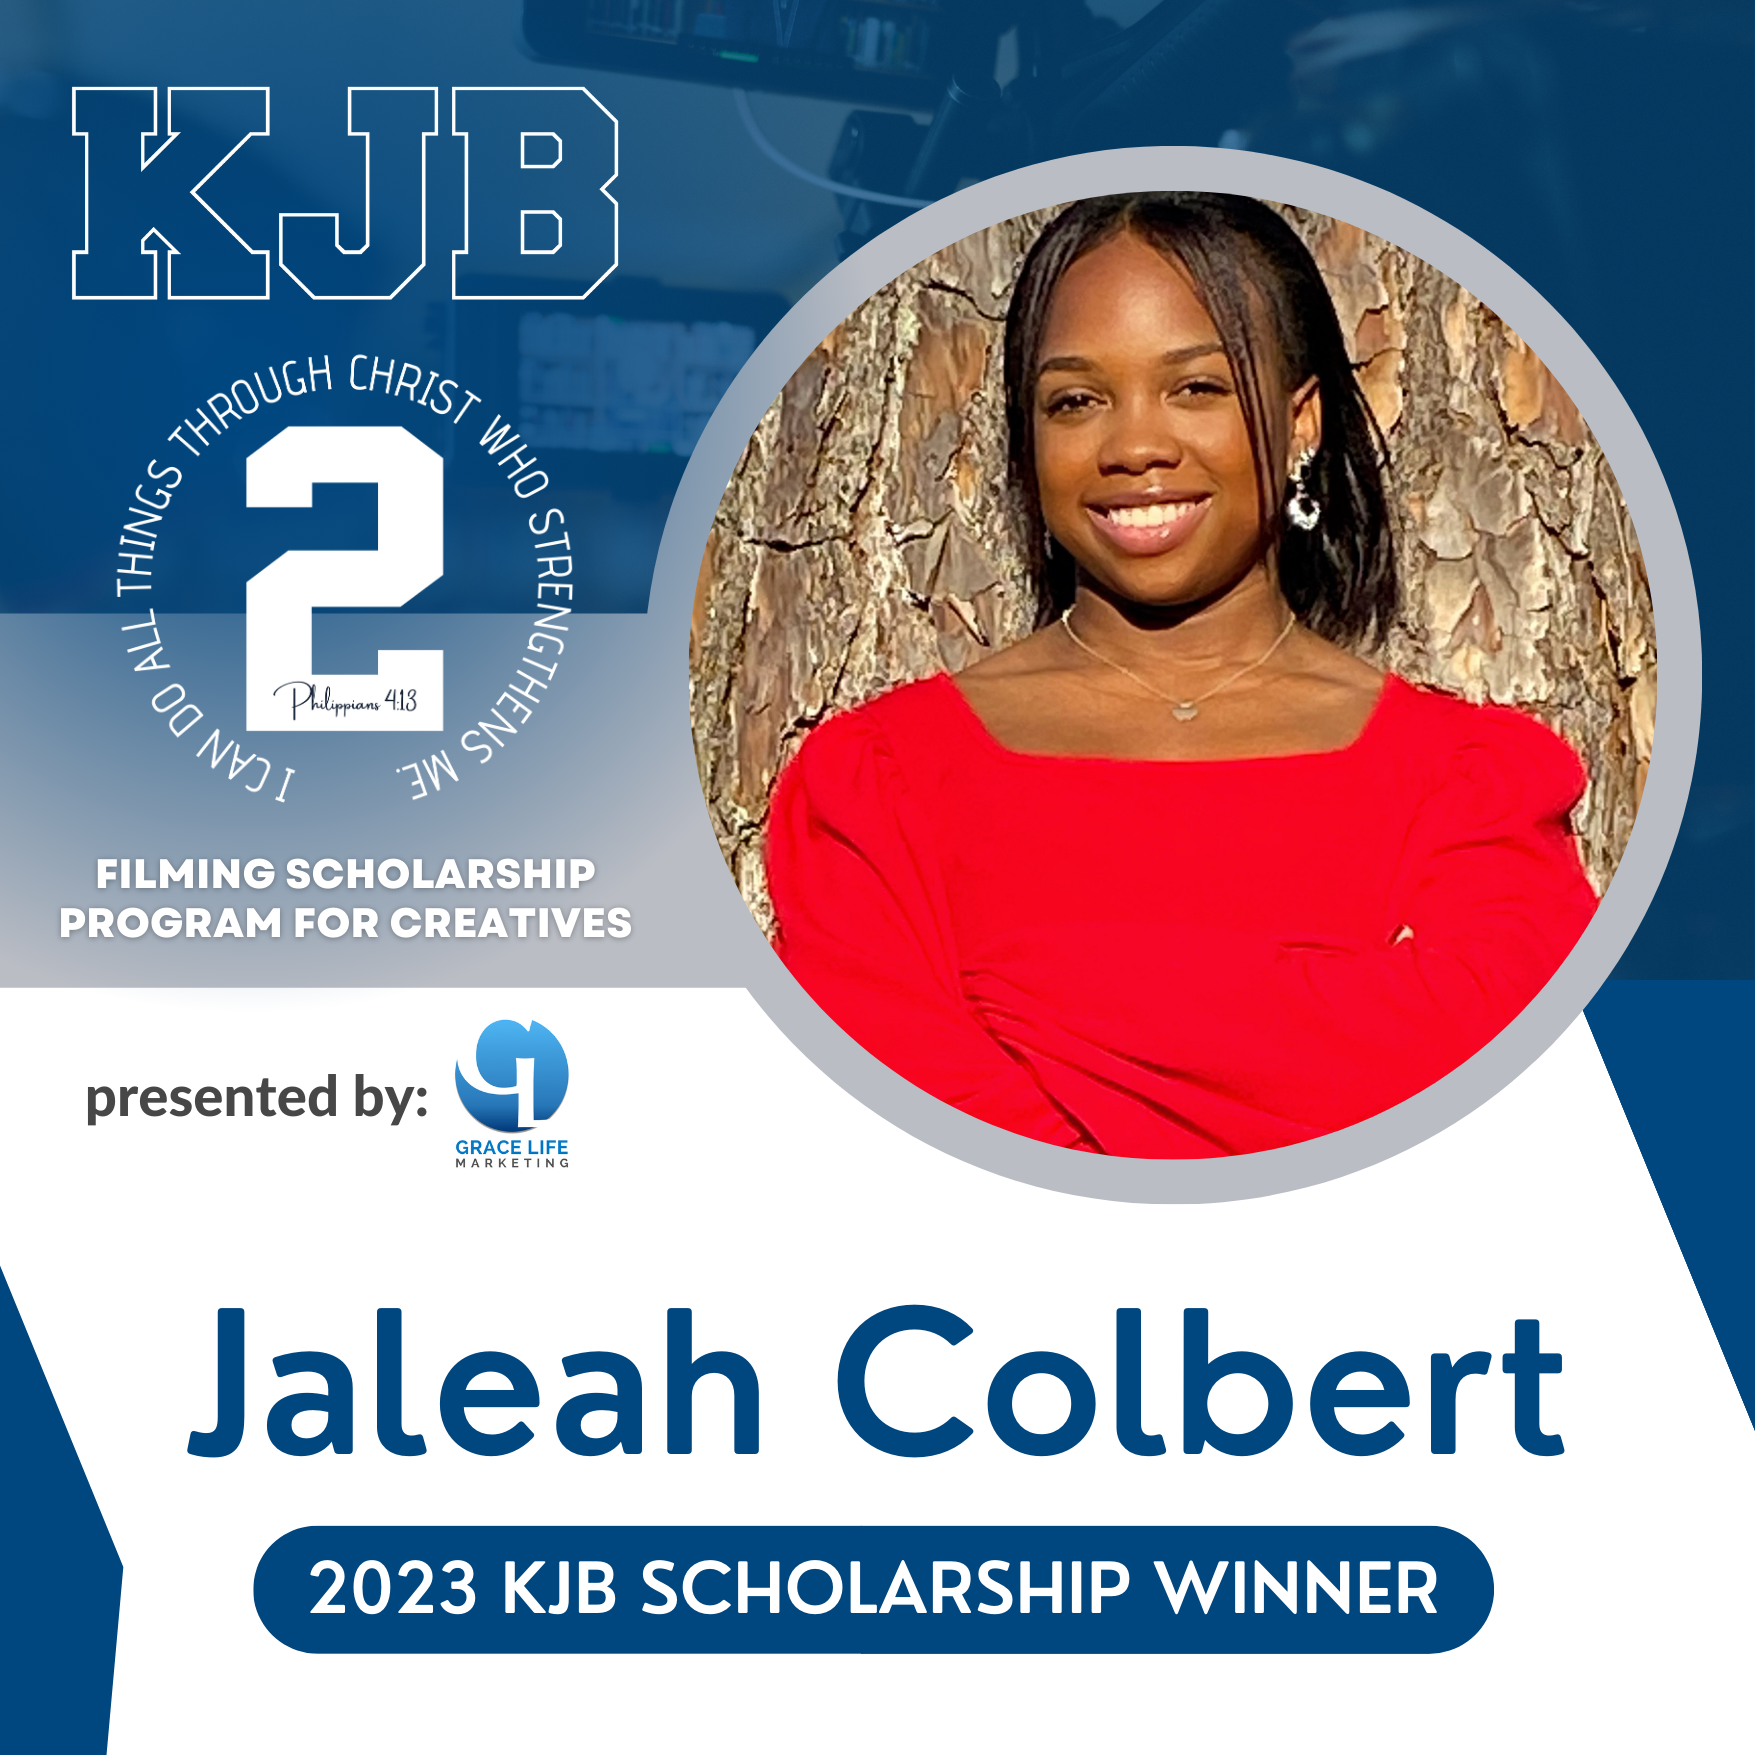 jaleah colbert is the winner of the kjb scholarship